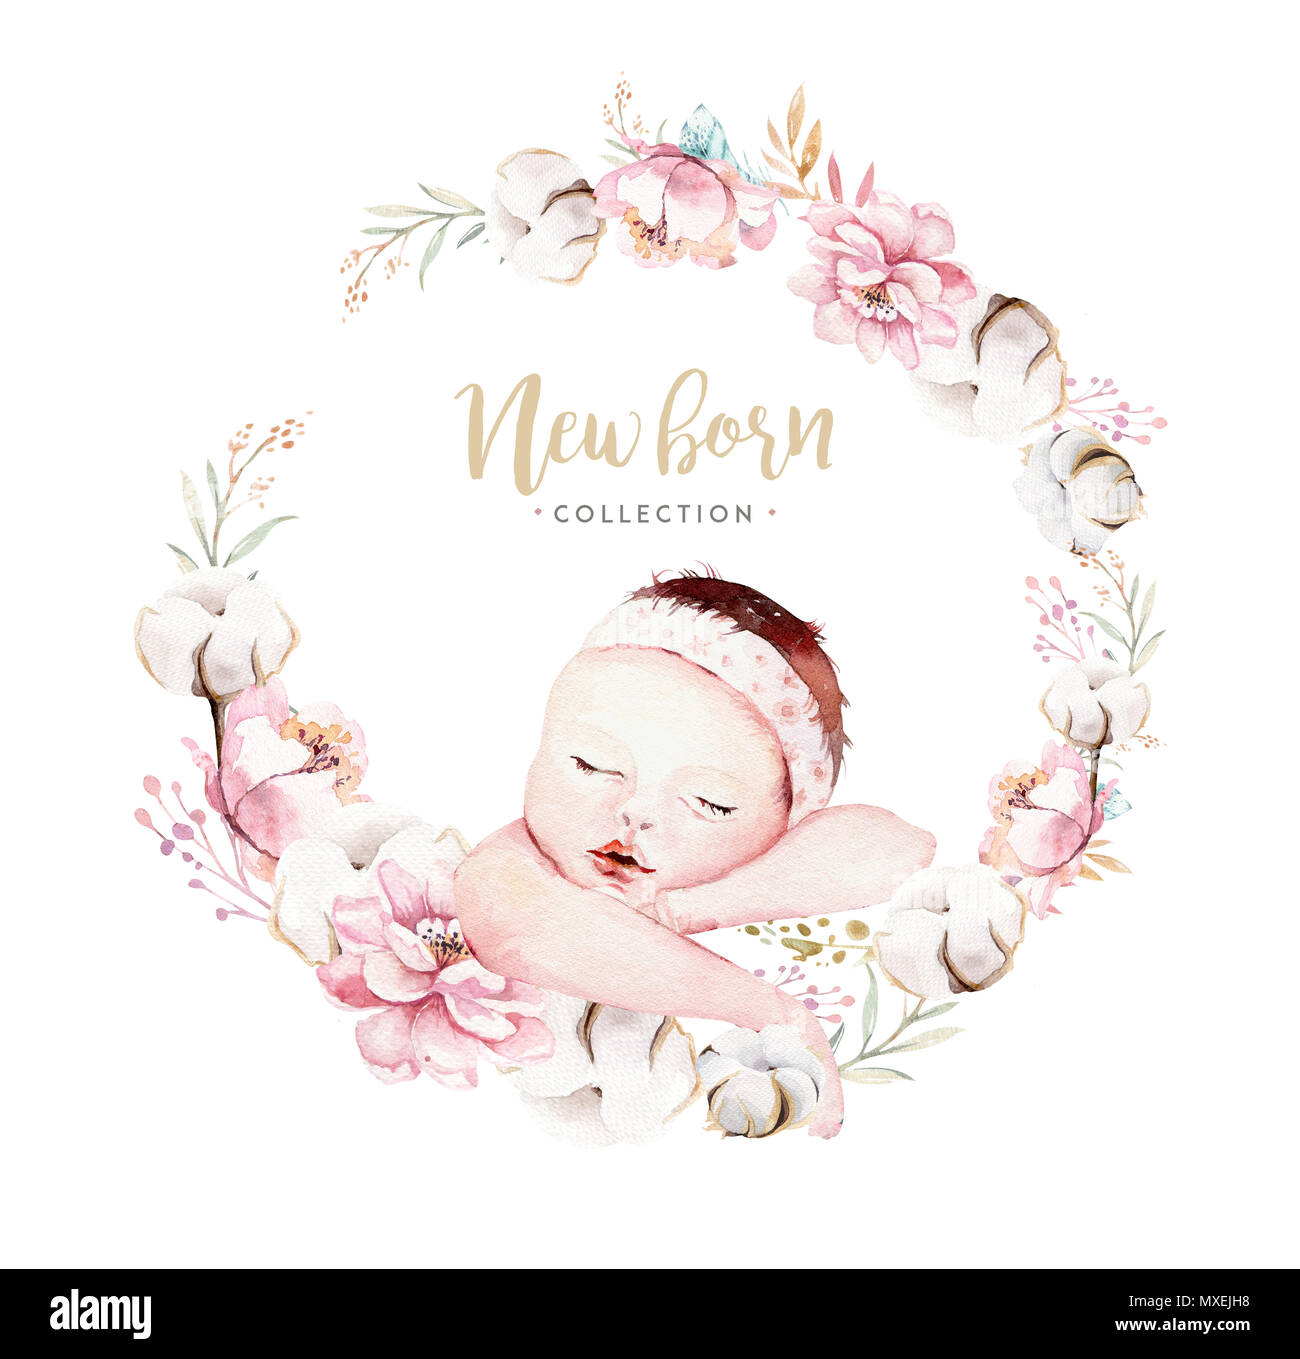 cute newborn watercolor baby. new born child illustration